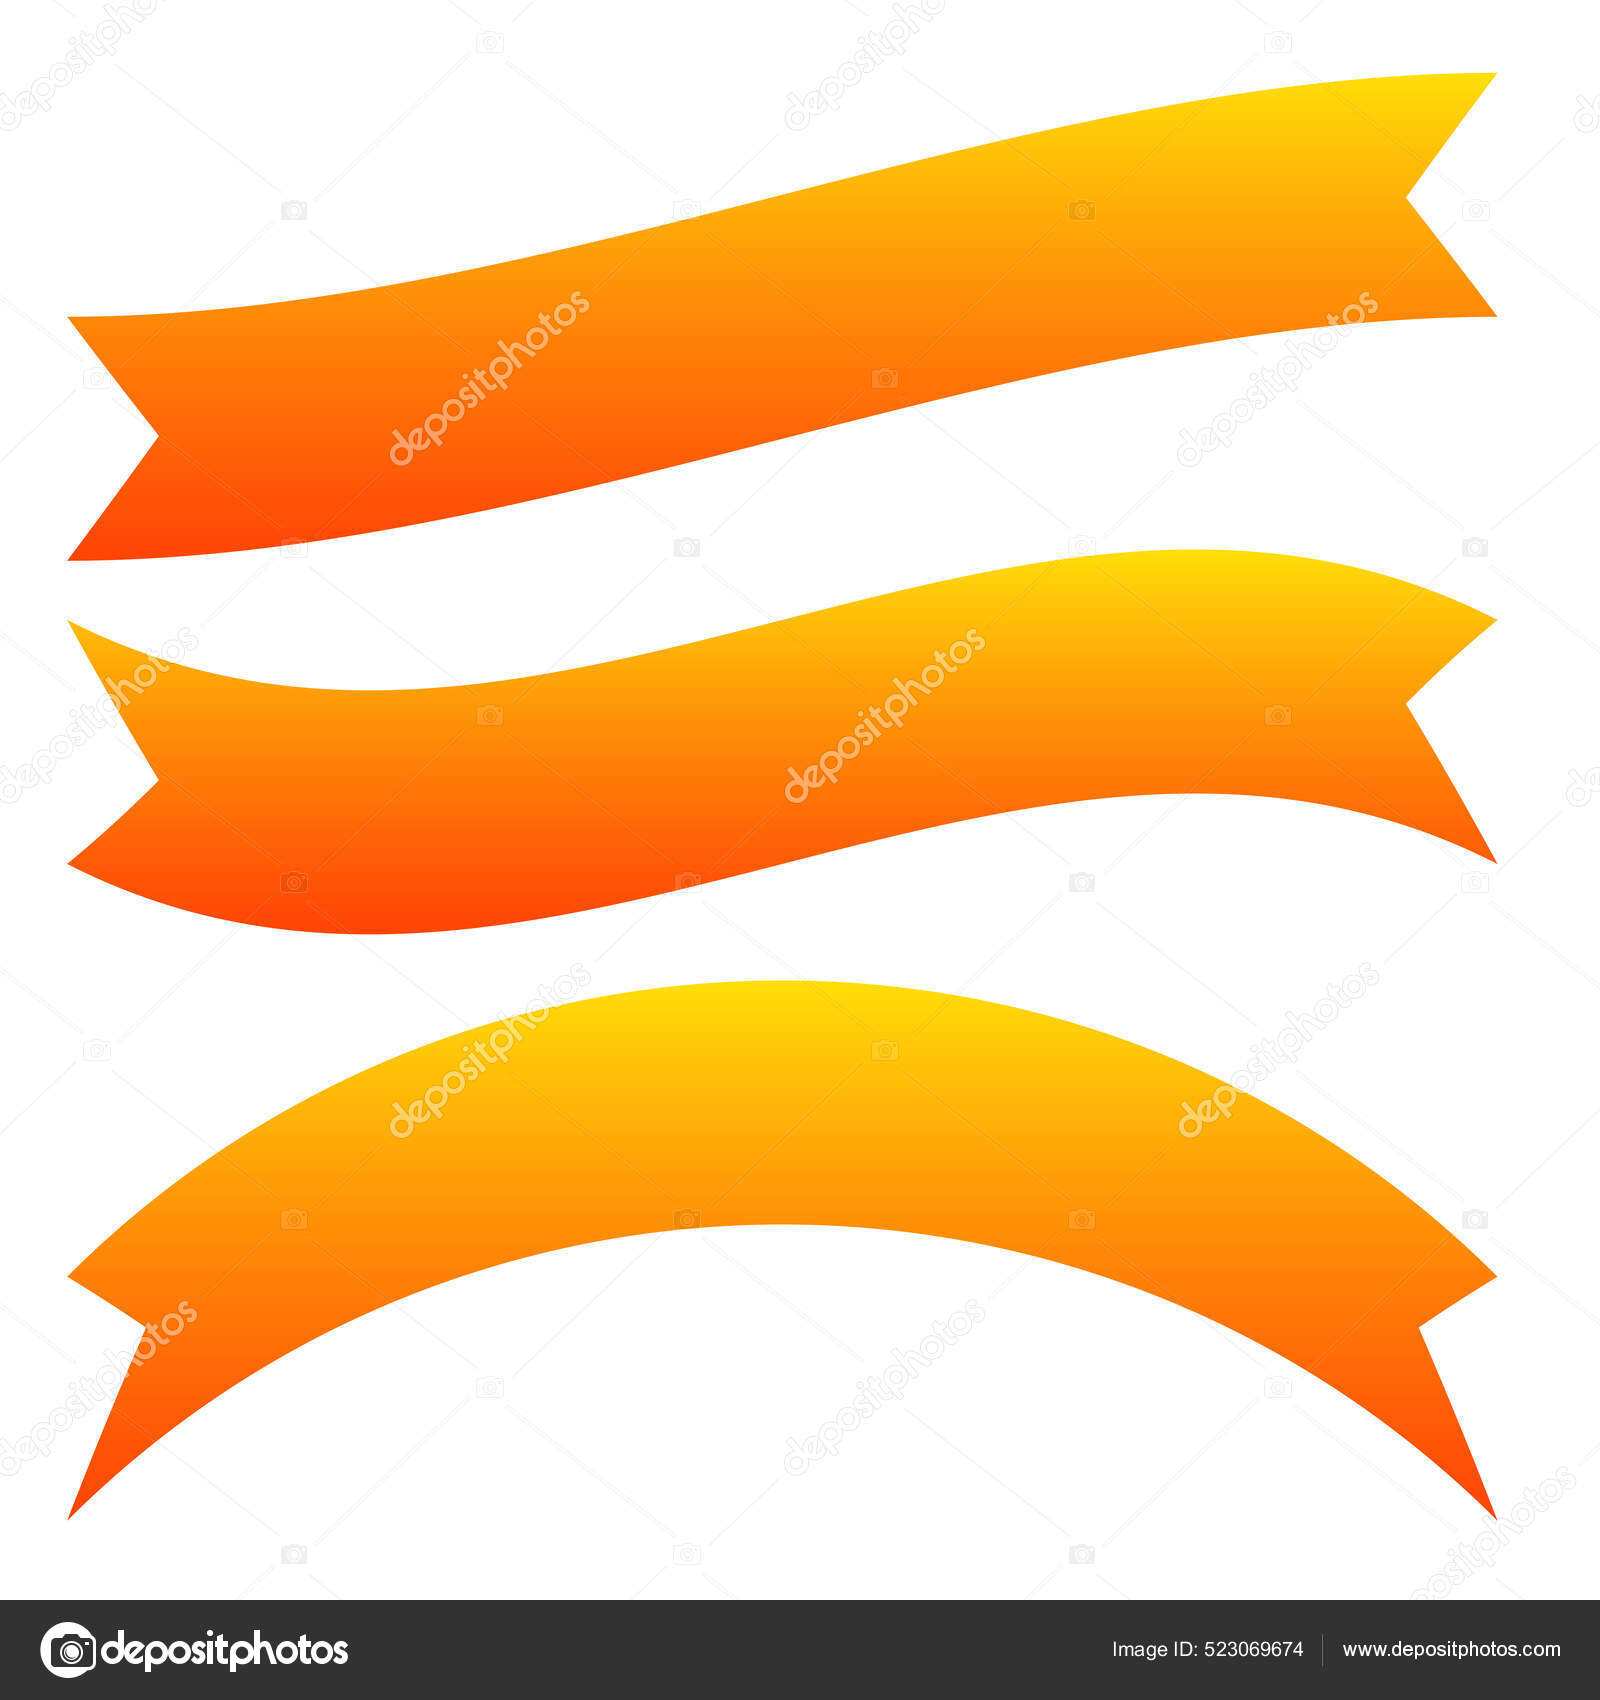 Orange Ribbon Banner PNG Picture, Orange Ribbon Banner, Orange, Ribbon,  Scroll PNG Image For Free Download